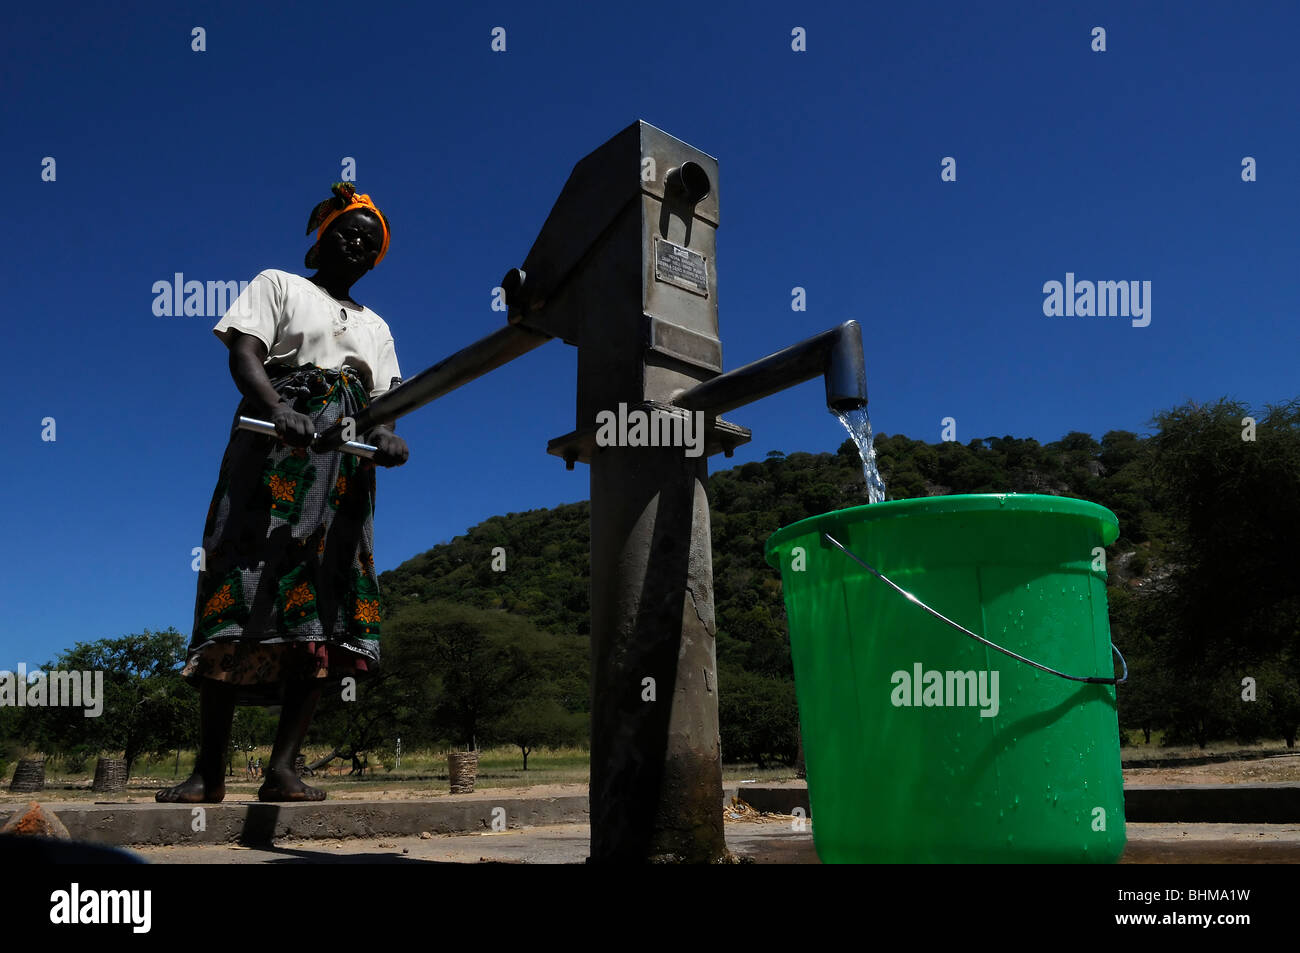 Un abitante di un villaggio utilizzando una pompa a mano rurale per pompare acqua potabile da un pozzo in un villaggio in Malawi Africa Foto Stock